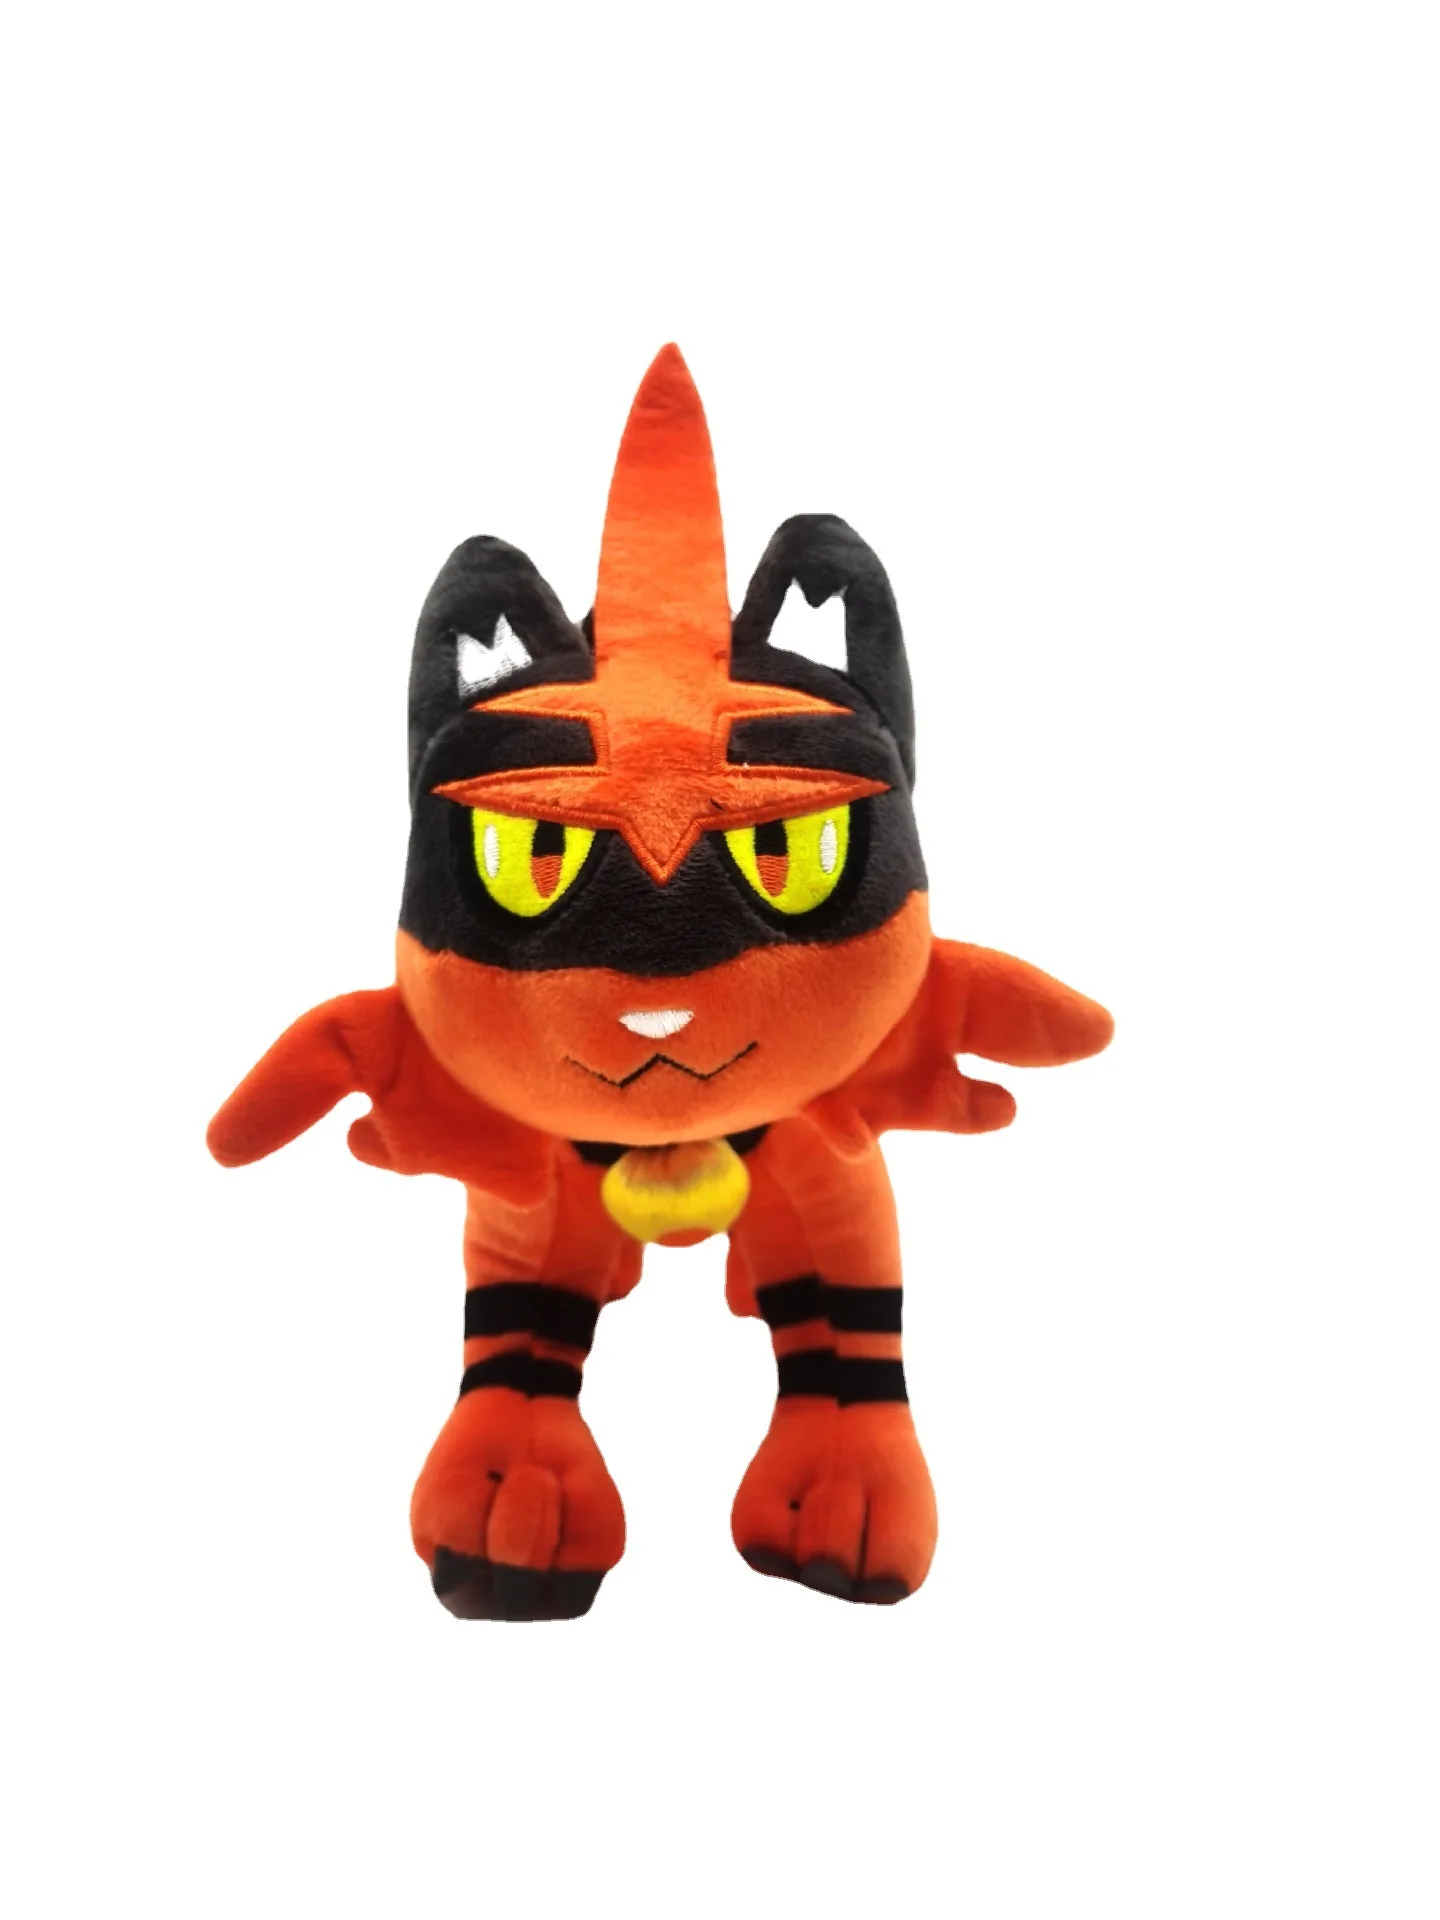 

Мультяшный Аниме Покемон оранжевый горячий Кот тигр пятно огня мяу игрушка кукла кулон праздничный подарок